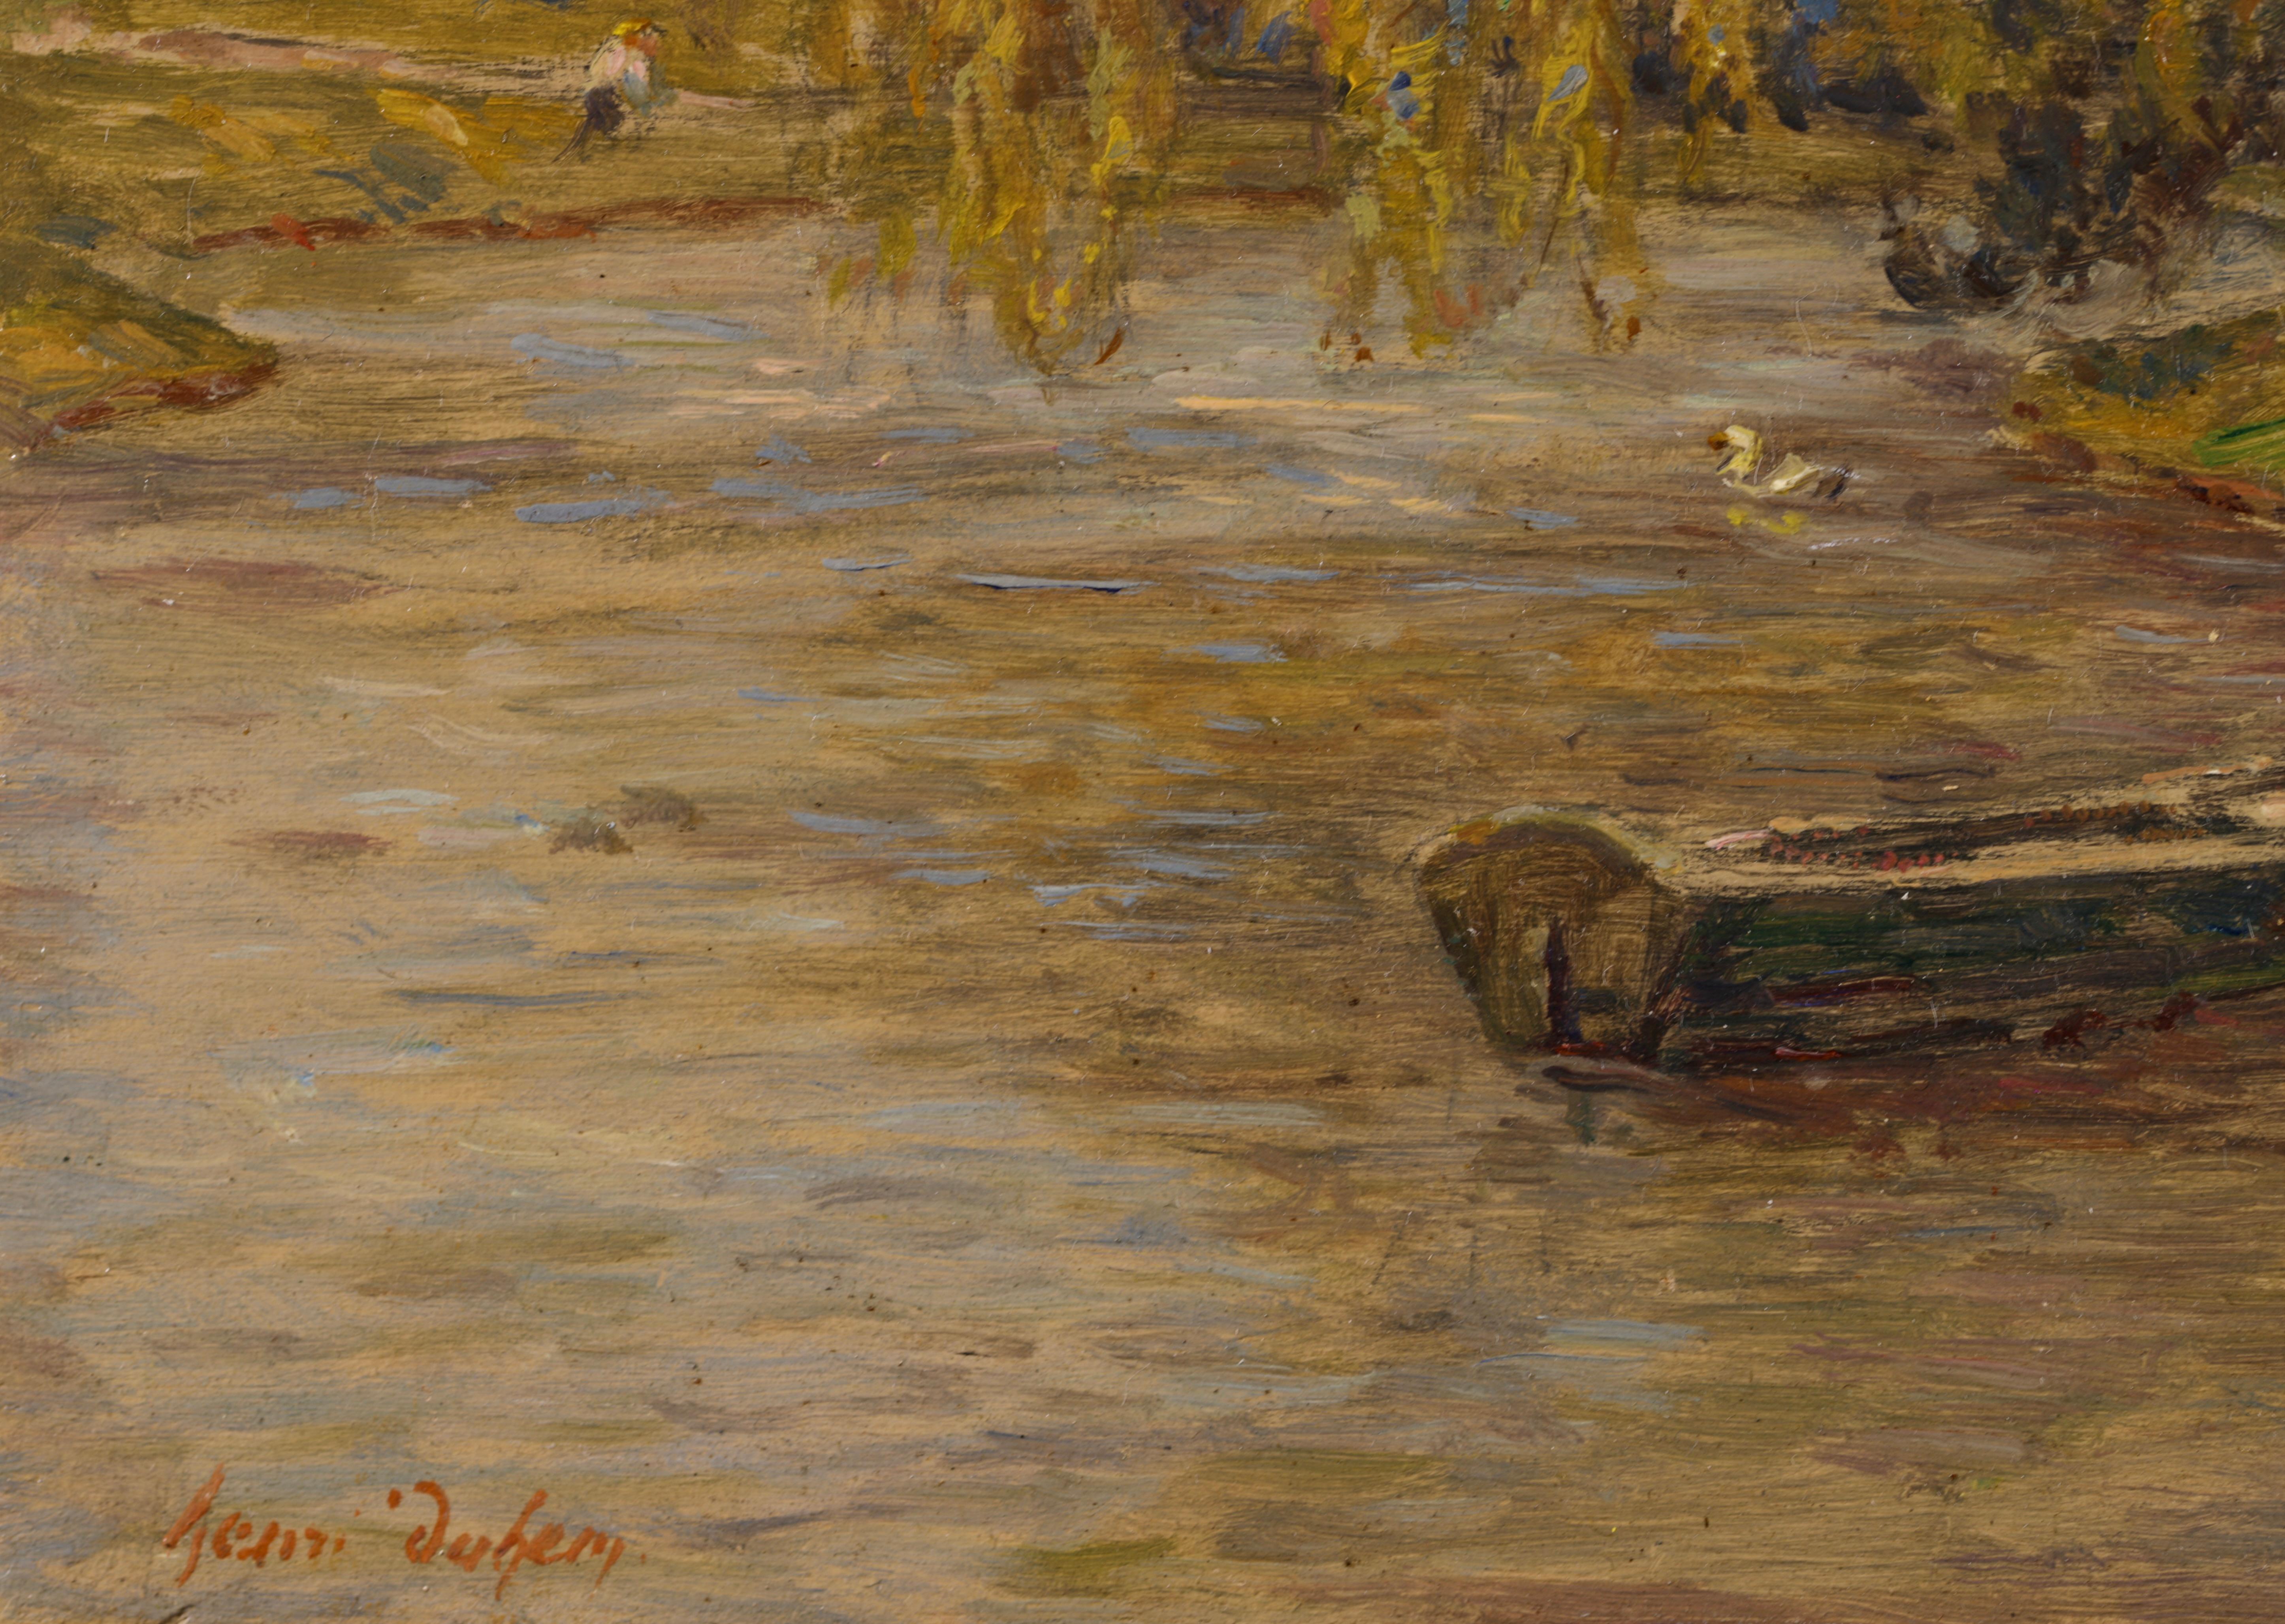 Punt on a River - Impressionist Oil, Figures by River Landscape by Henri Duhem For Sale 1